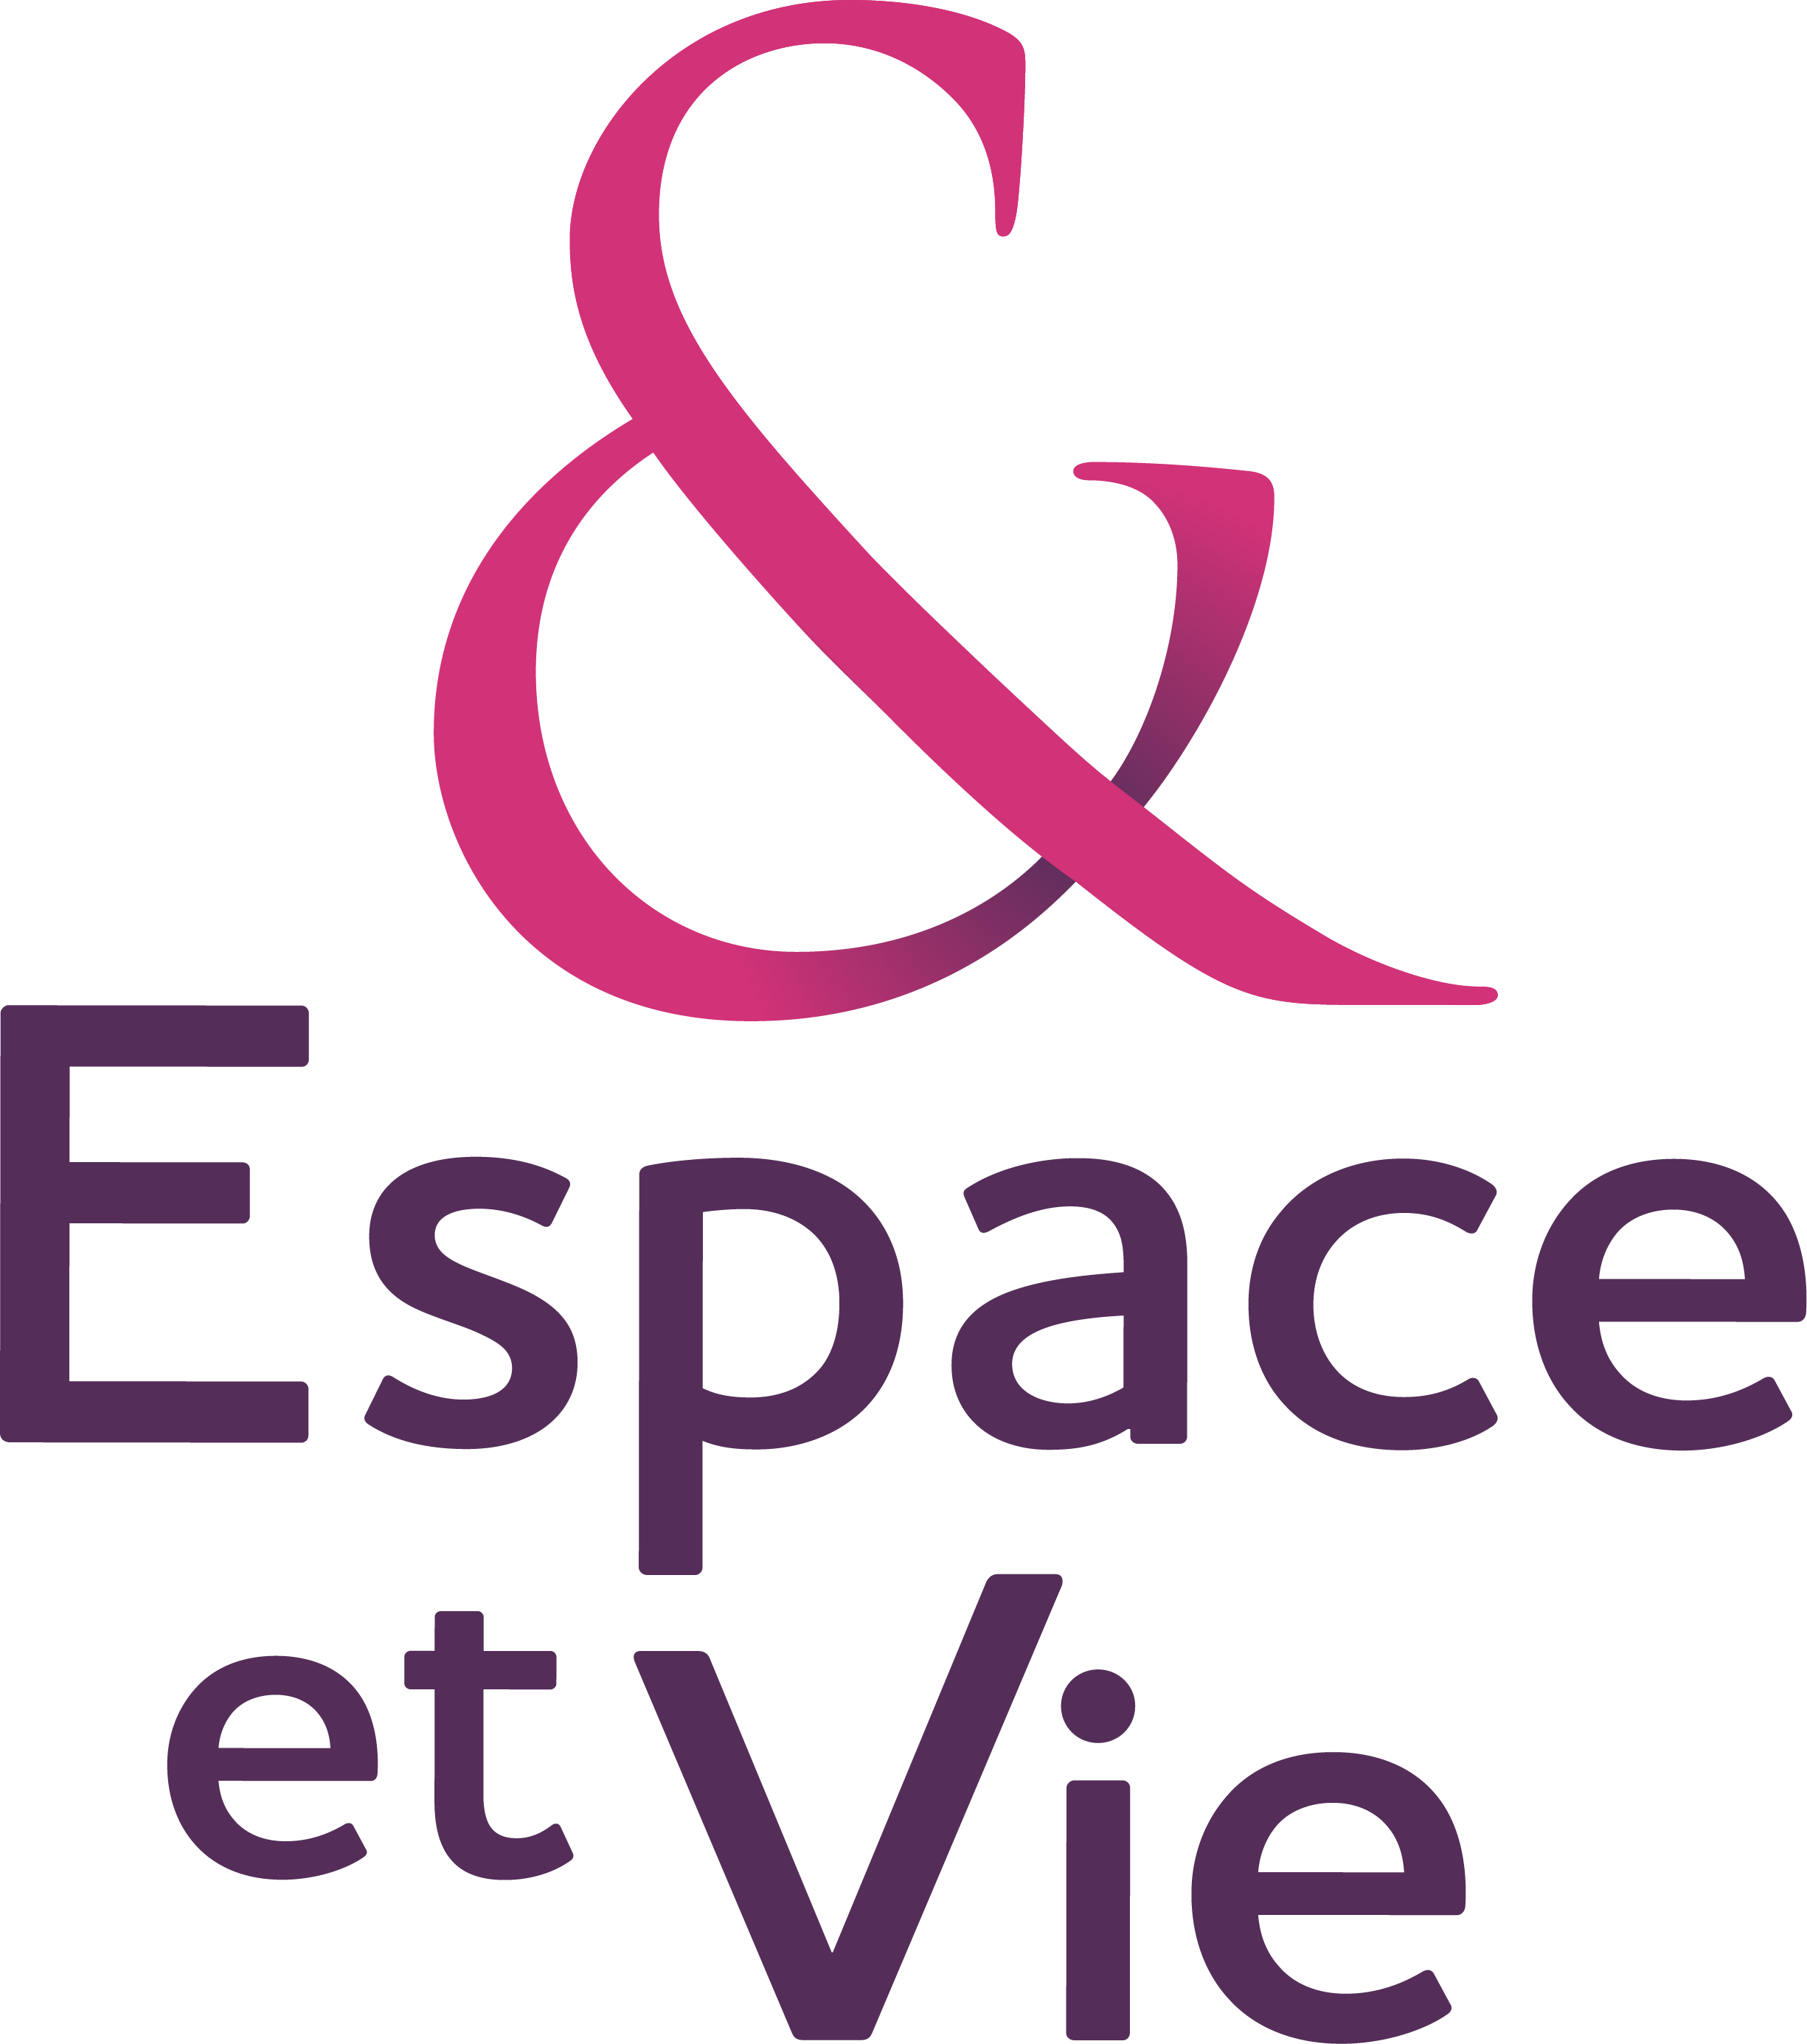 Logo Résidence Espace et Vie Sallanches